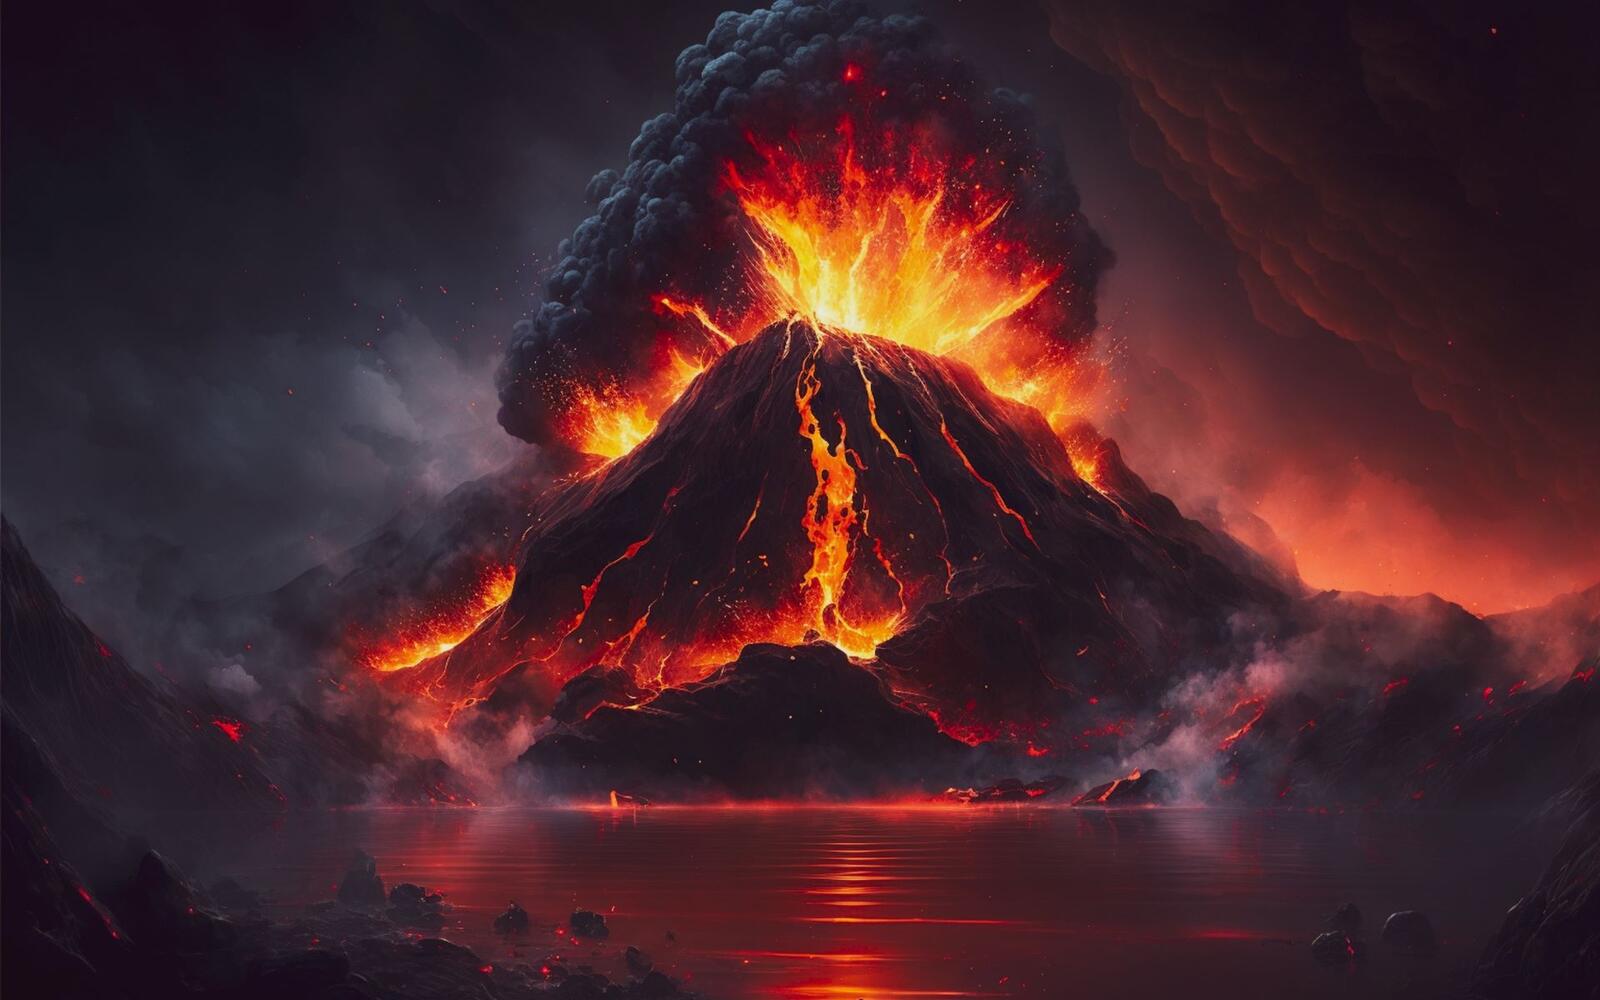 Бесплатное фото Извержение вулкана.Арт